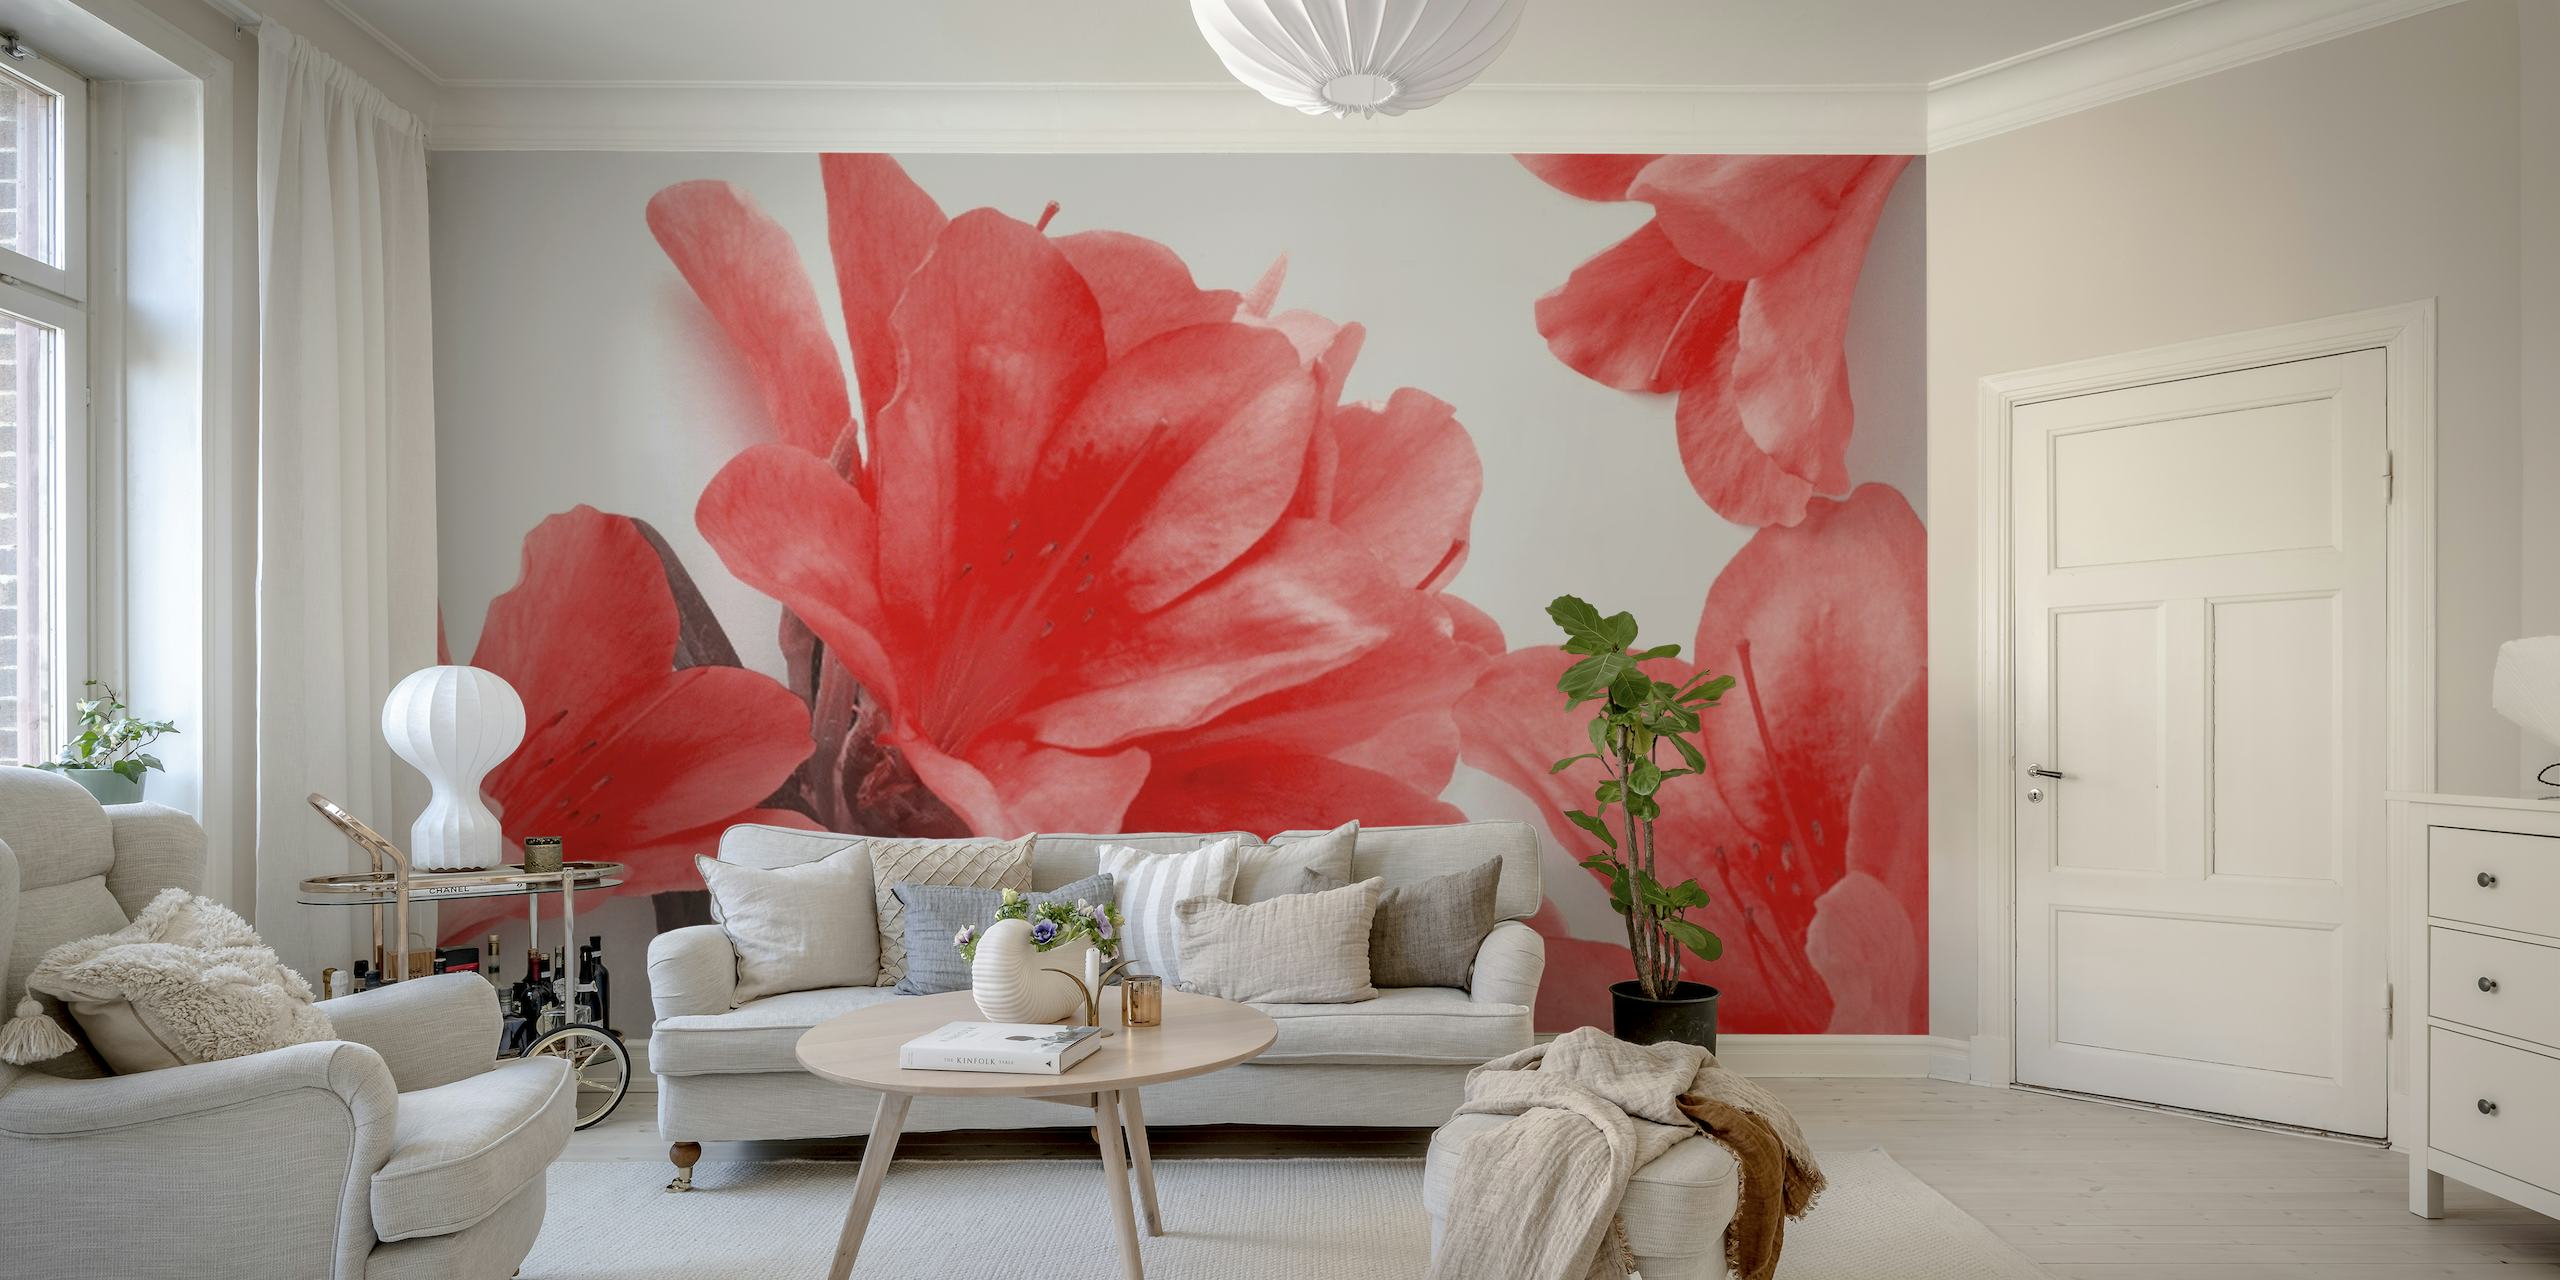 Elegante rode lelies muurschildering met een zachte achtergrond, perfect voor interieurdecoratie